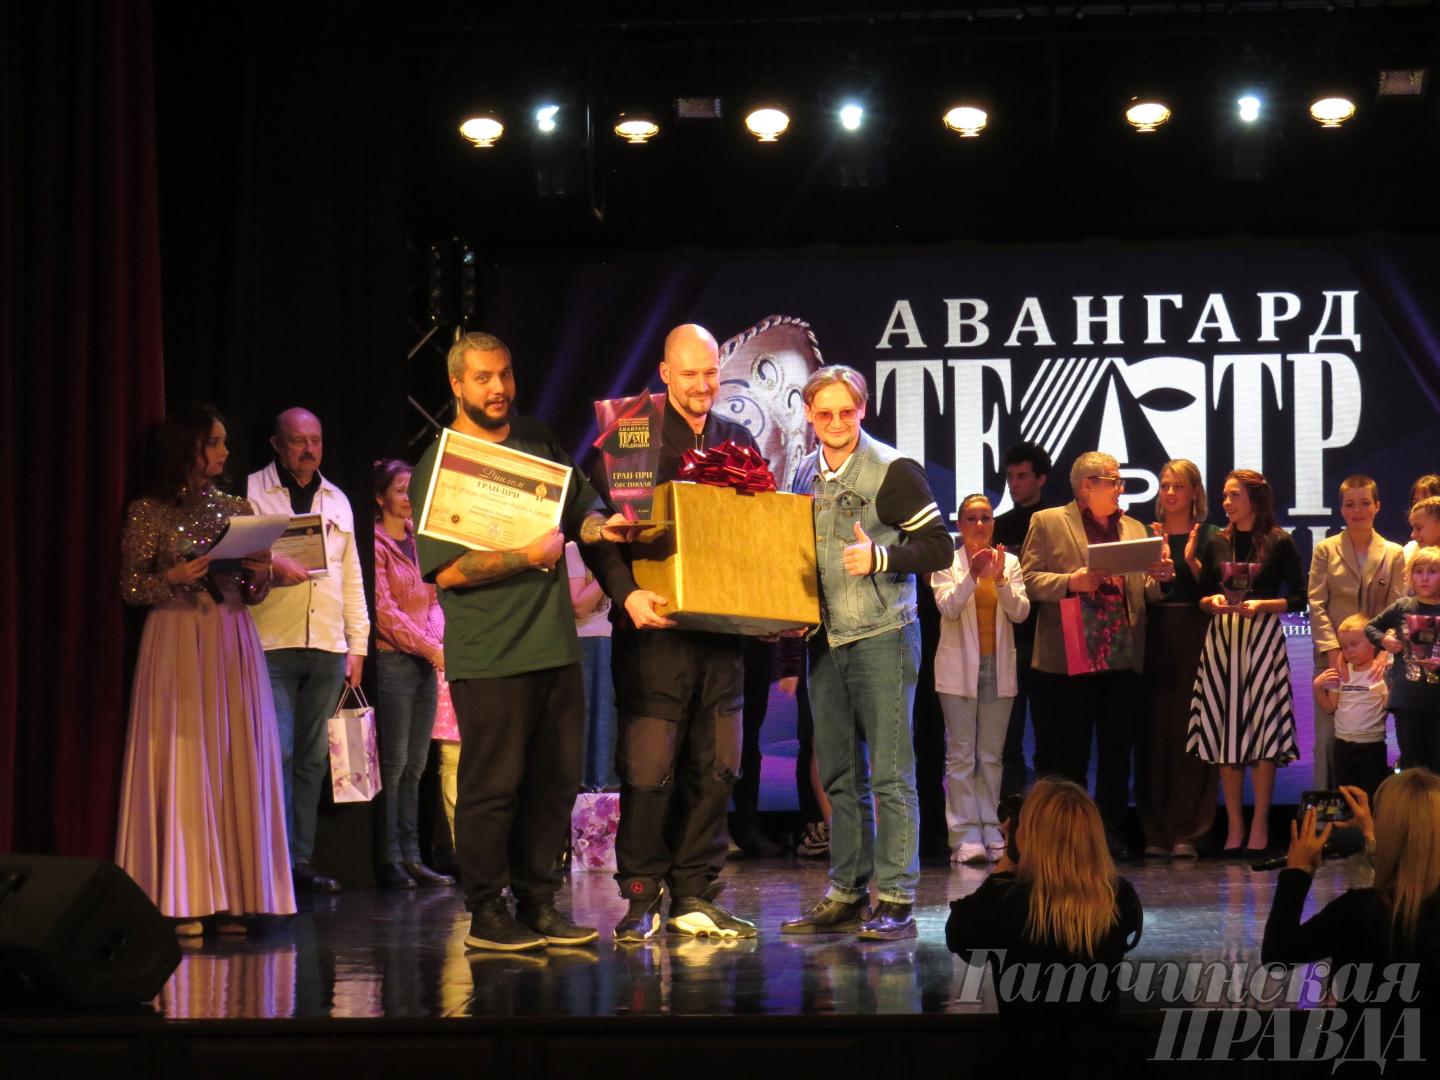 Гран-при фестиваля «Авангард и традиции» - у театра из Сургута